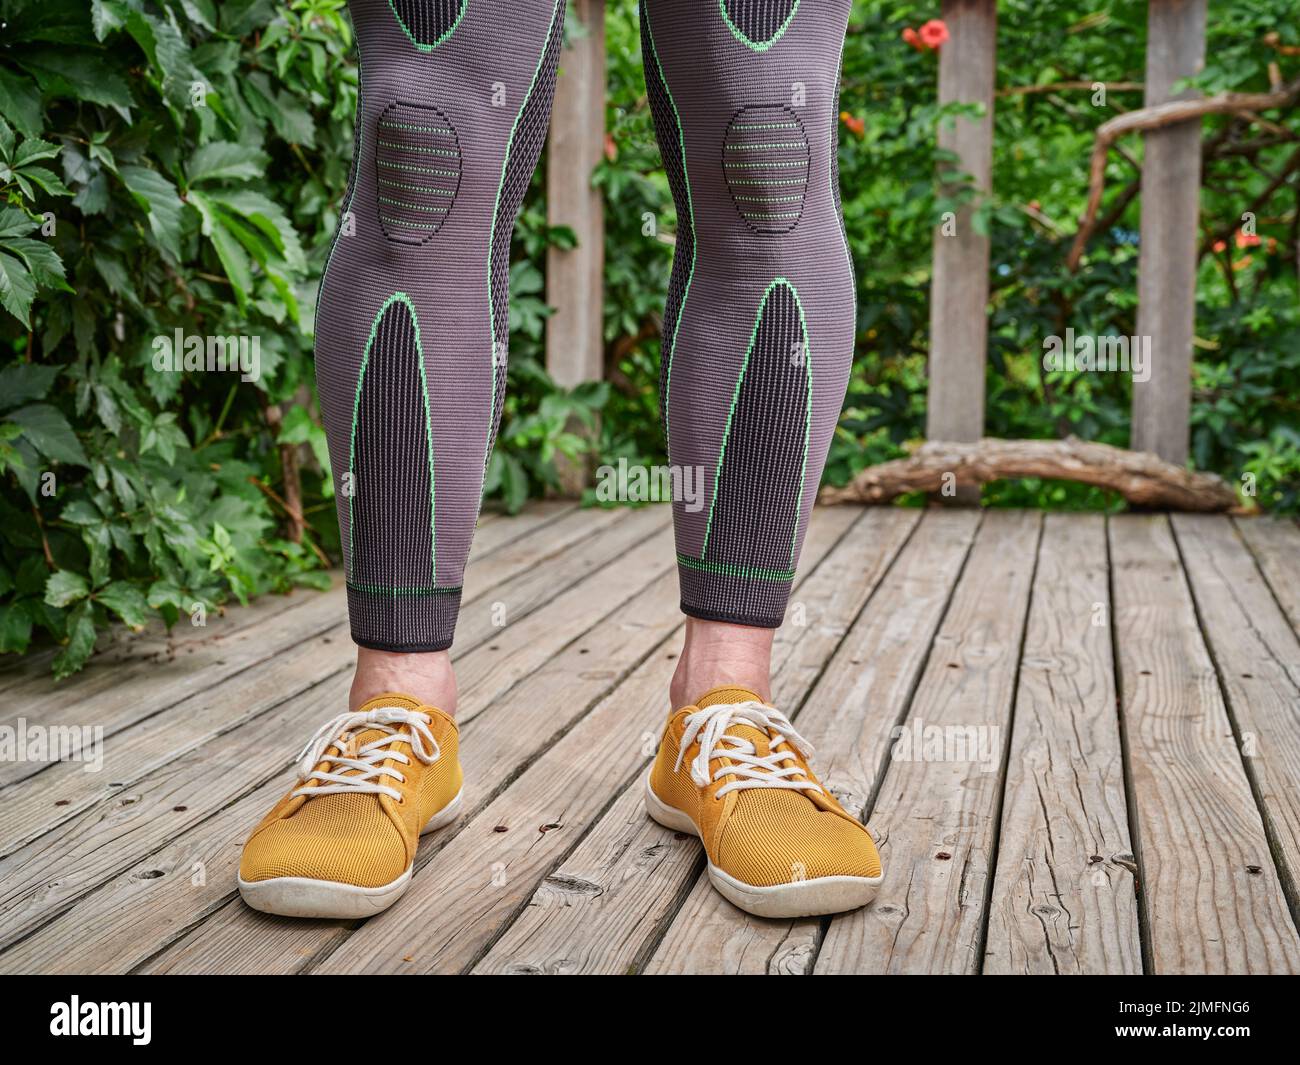 piernas masculinas en mangas de compresión que promueven la circulación sanguínea y el flujo de oxígeno para aliviar el dolor de rodilla y pantorrilla Foto de stock